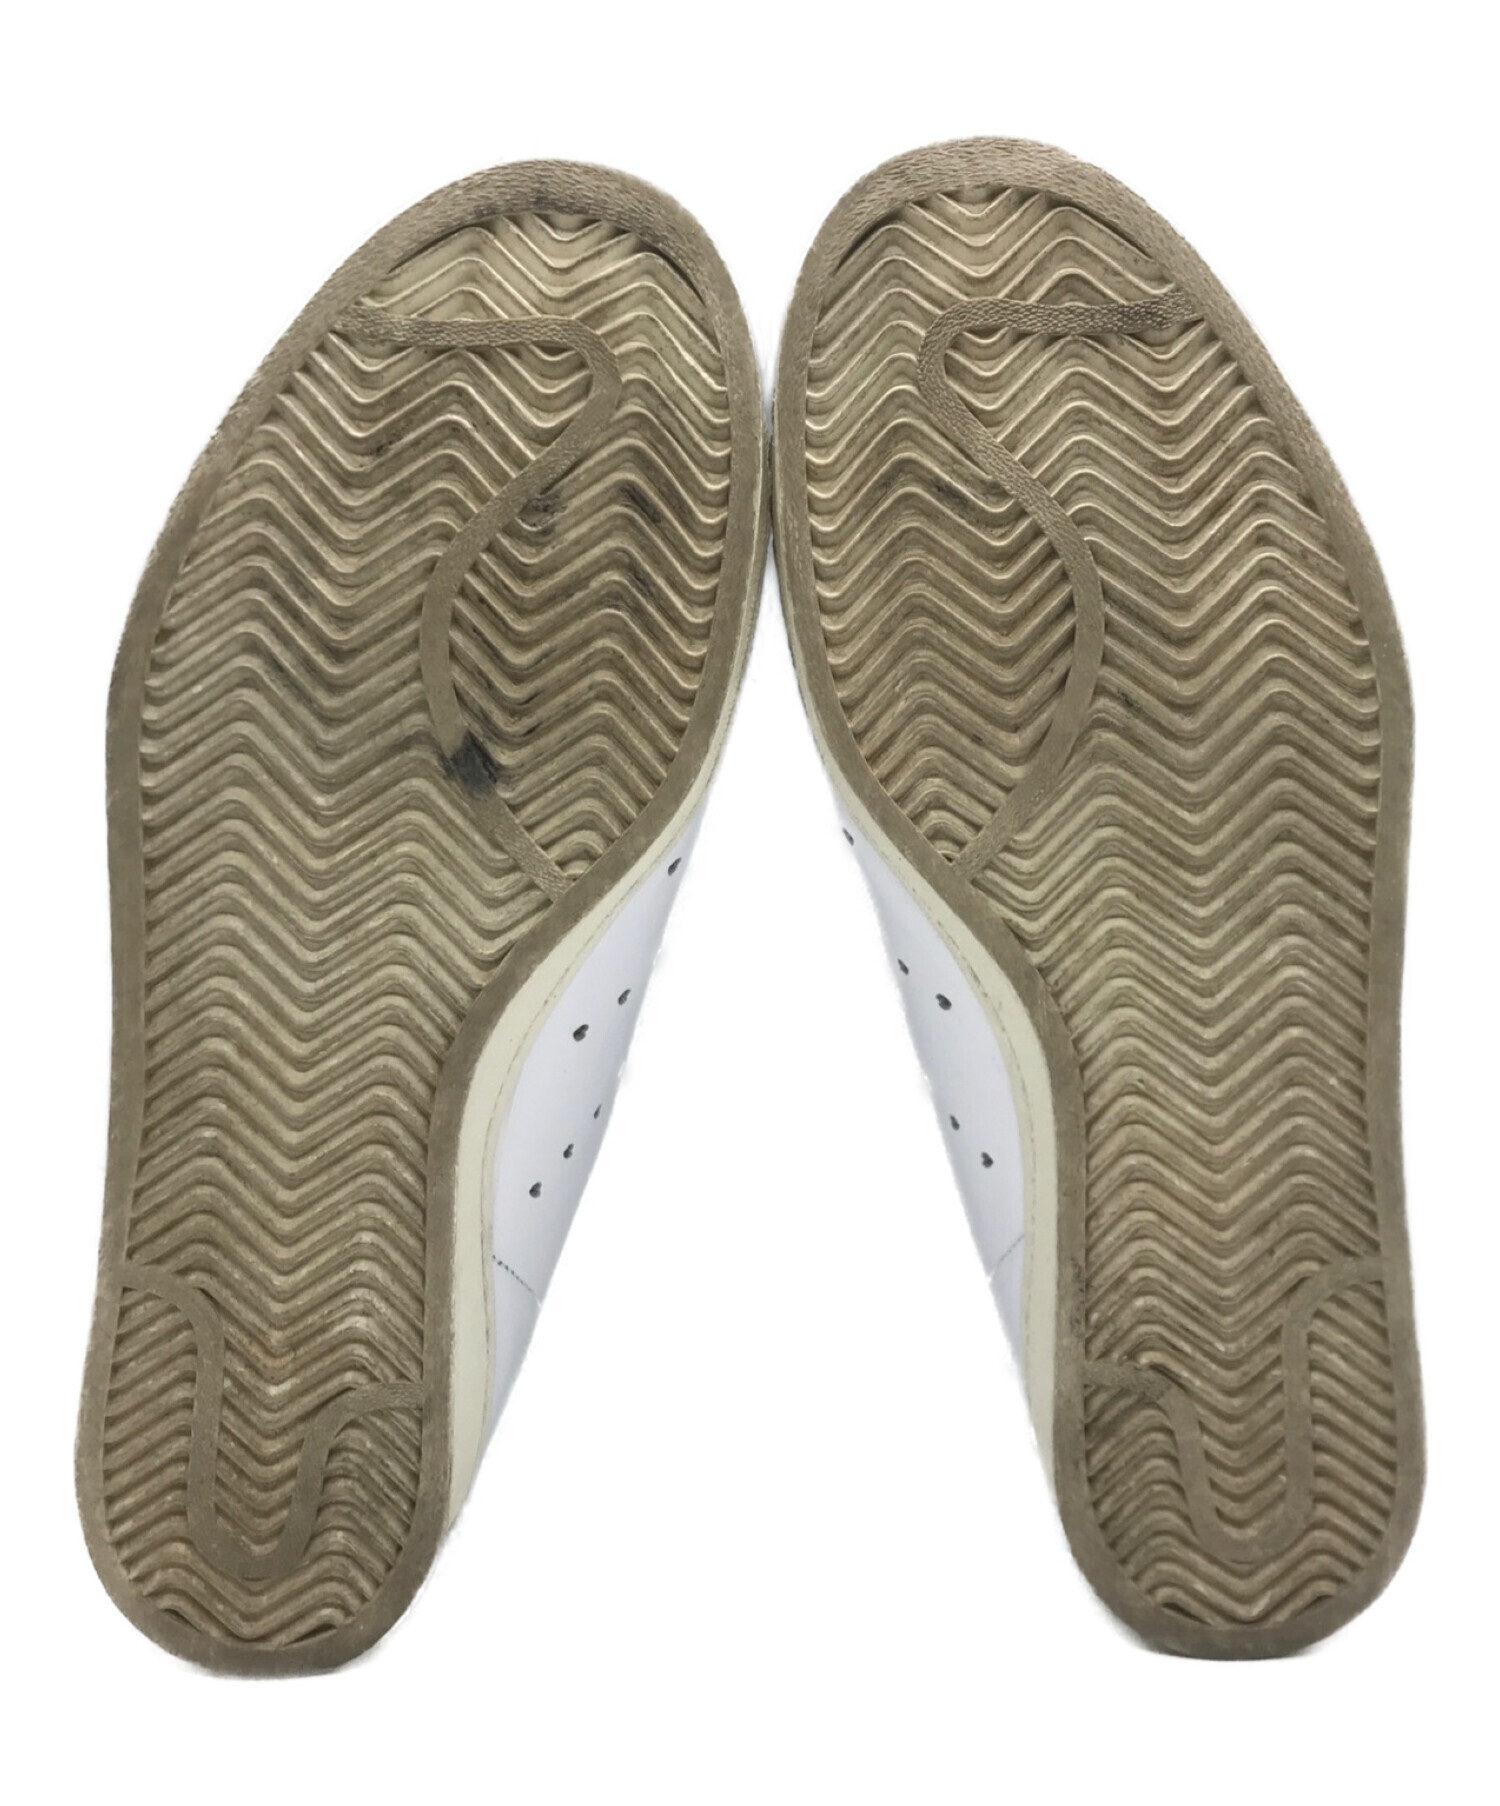 adidas (アディダス) HUMAN MADE (ヒューマンメイド) UNOFCL HM ホワイト サイズ:28.5cm